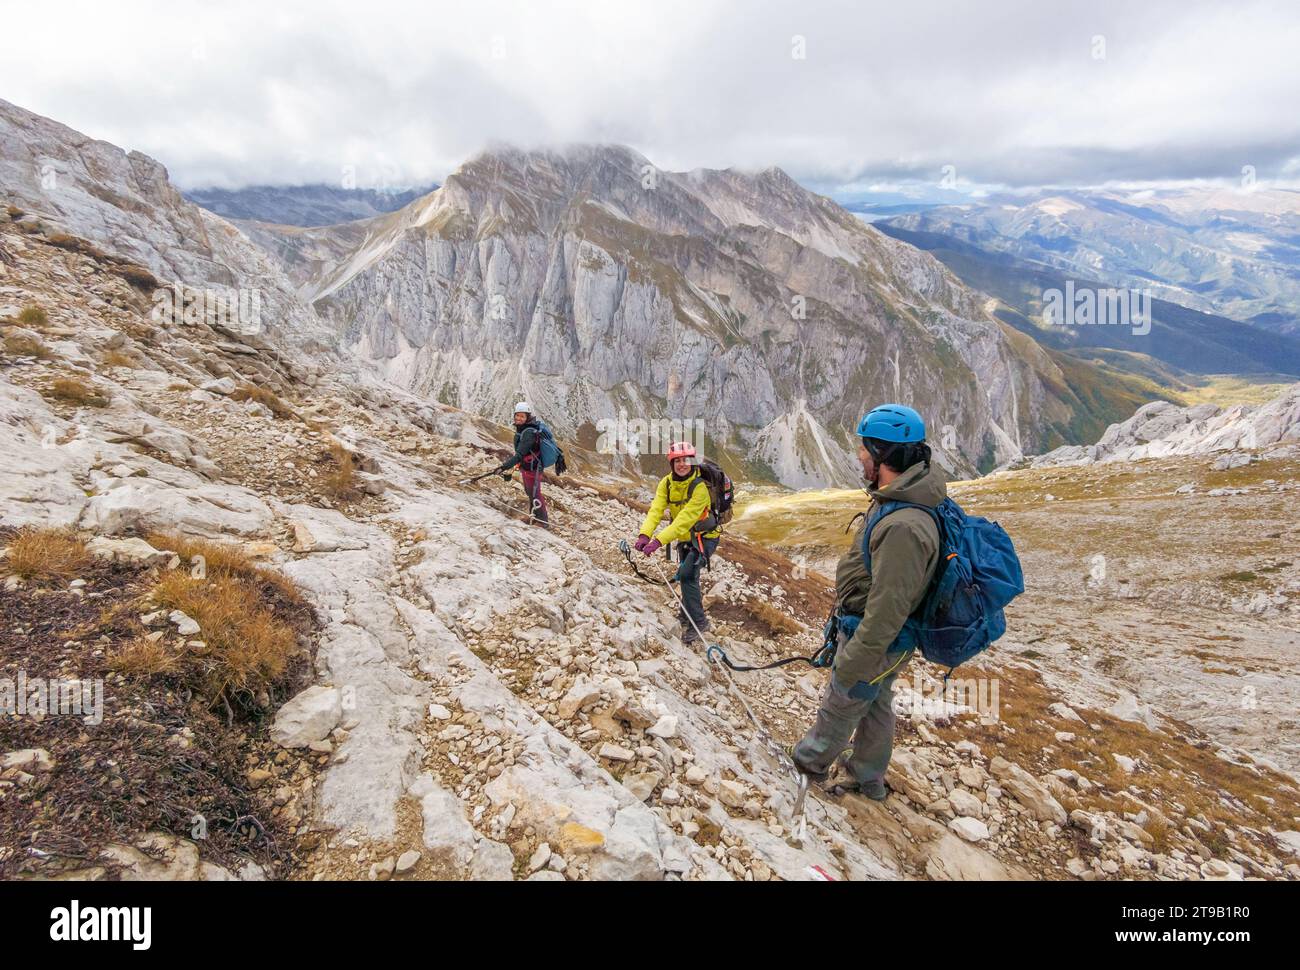 Gran Sasso, Italia - il trekking estremo nel Corno piccolo, sopra i 2600 metri in Abruzzo, con l'alpinismo Ferrata Brizio e Ferrata Ventricini Foto Stock